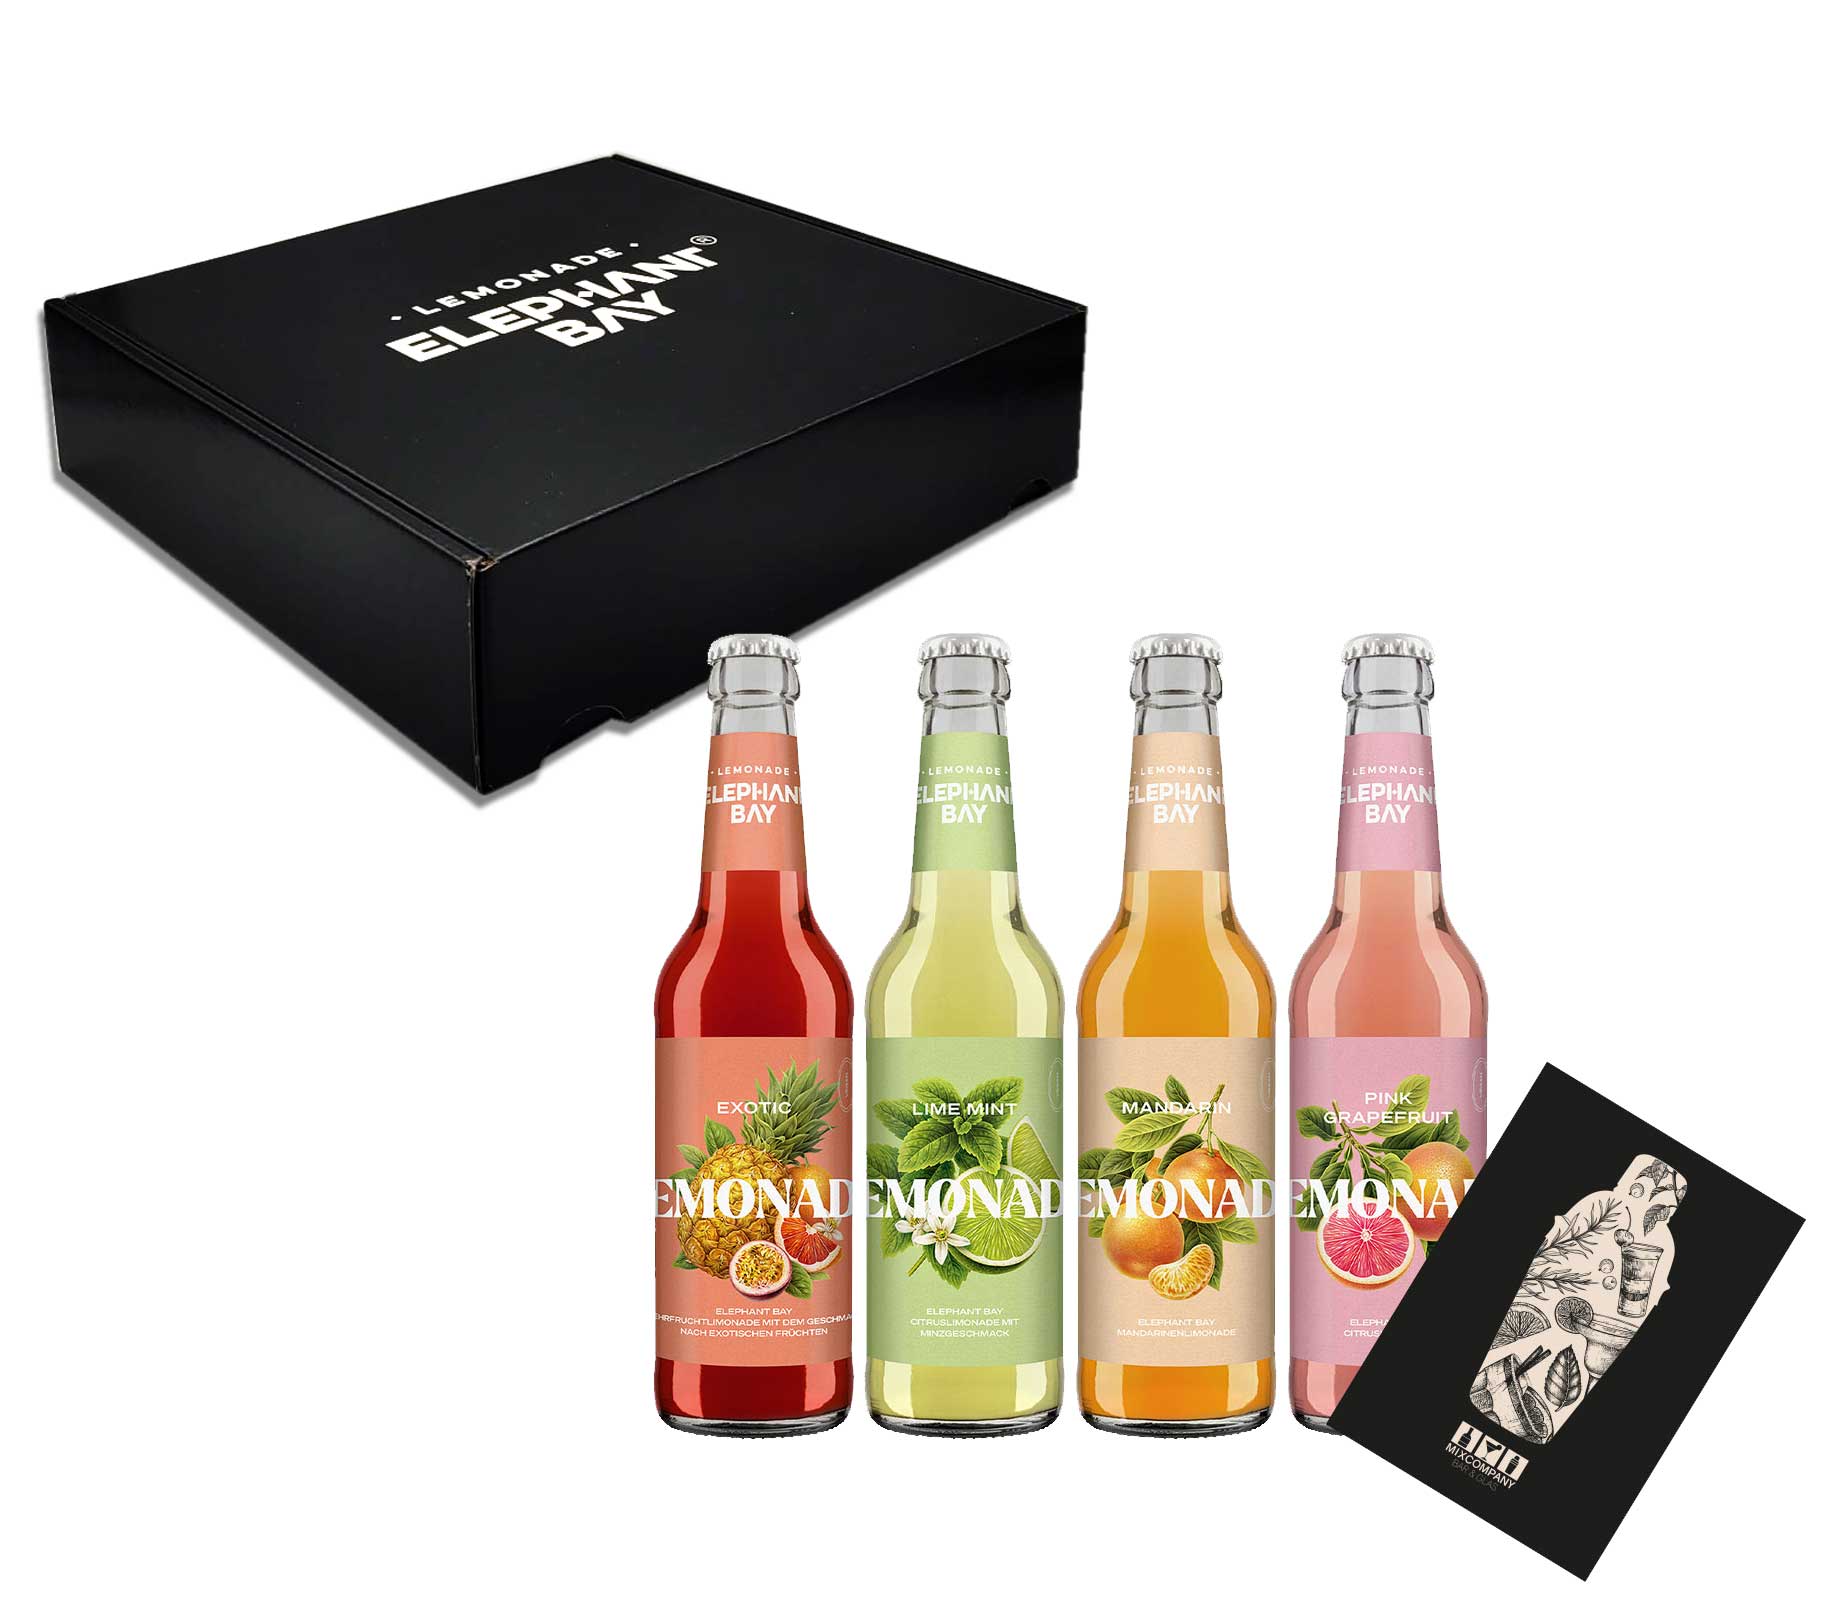 Elephant Bay 4er Lemonaden tasting Box - 1x pro Sorte Pink Grapefruit + Mandarin + Exotic + Lime Mint je 330ml inkl. Pfand - MEHRWEG